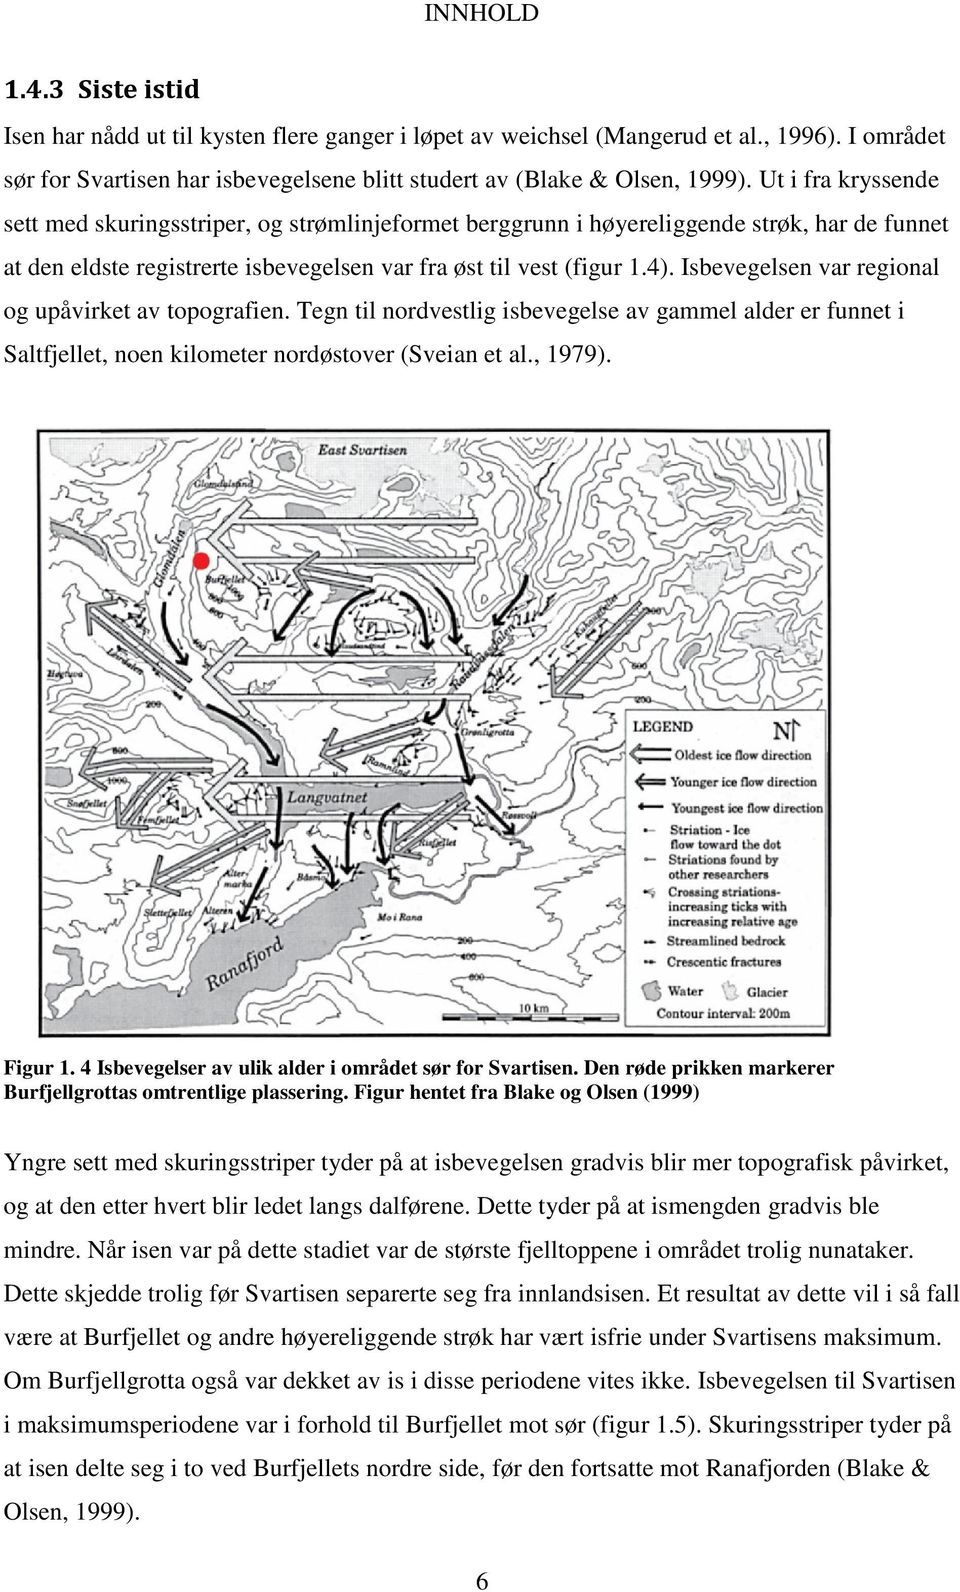 Isbevegelsen var regional og upåvirket av topografien. Tegn til nordvestlig isbevegelse av gammel alder er funnet i Saltfjellet, noen kilometer nordøstover (Sveian et al., 1979). Figur 1.